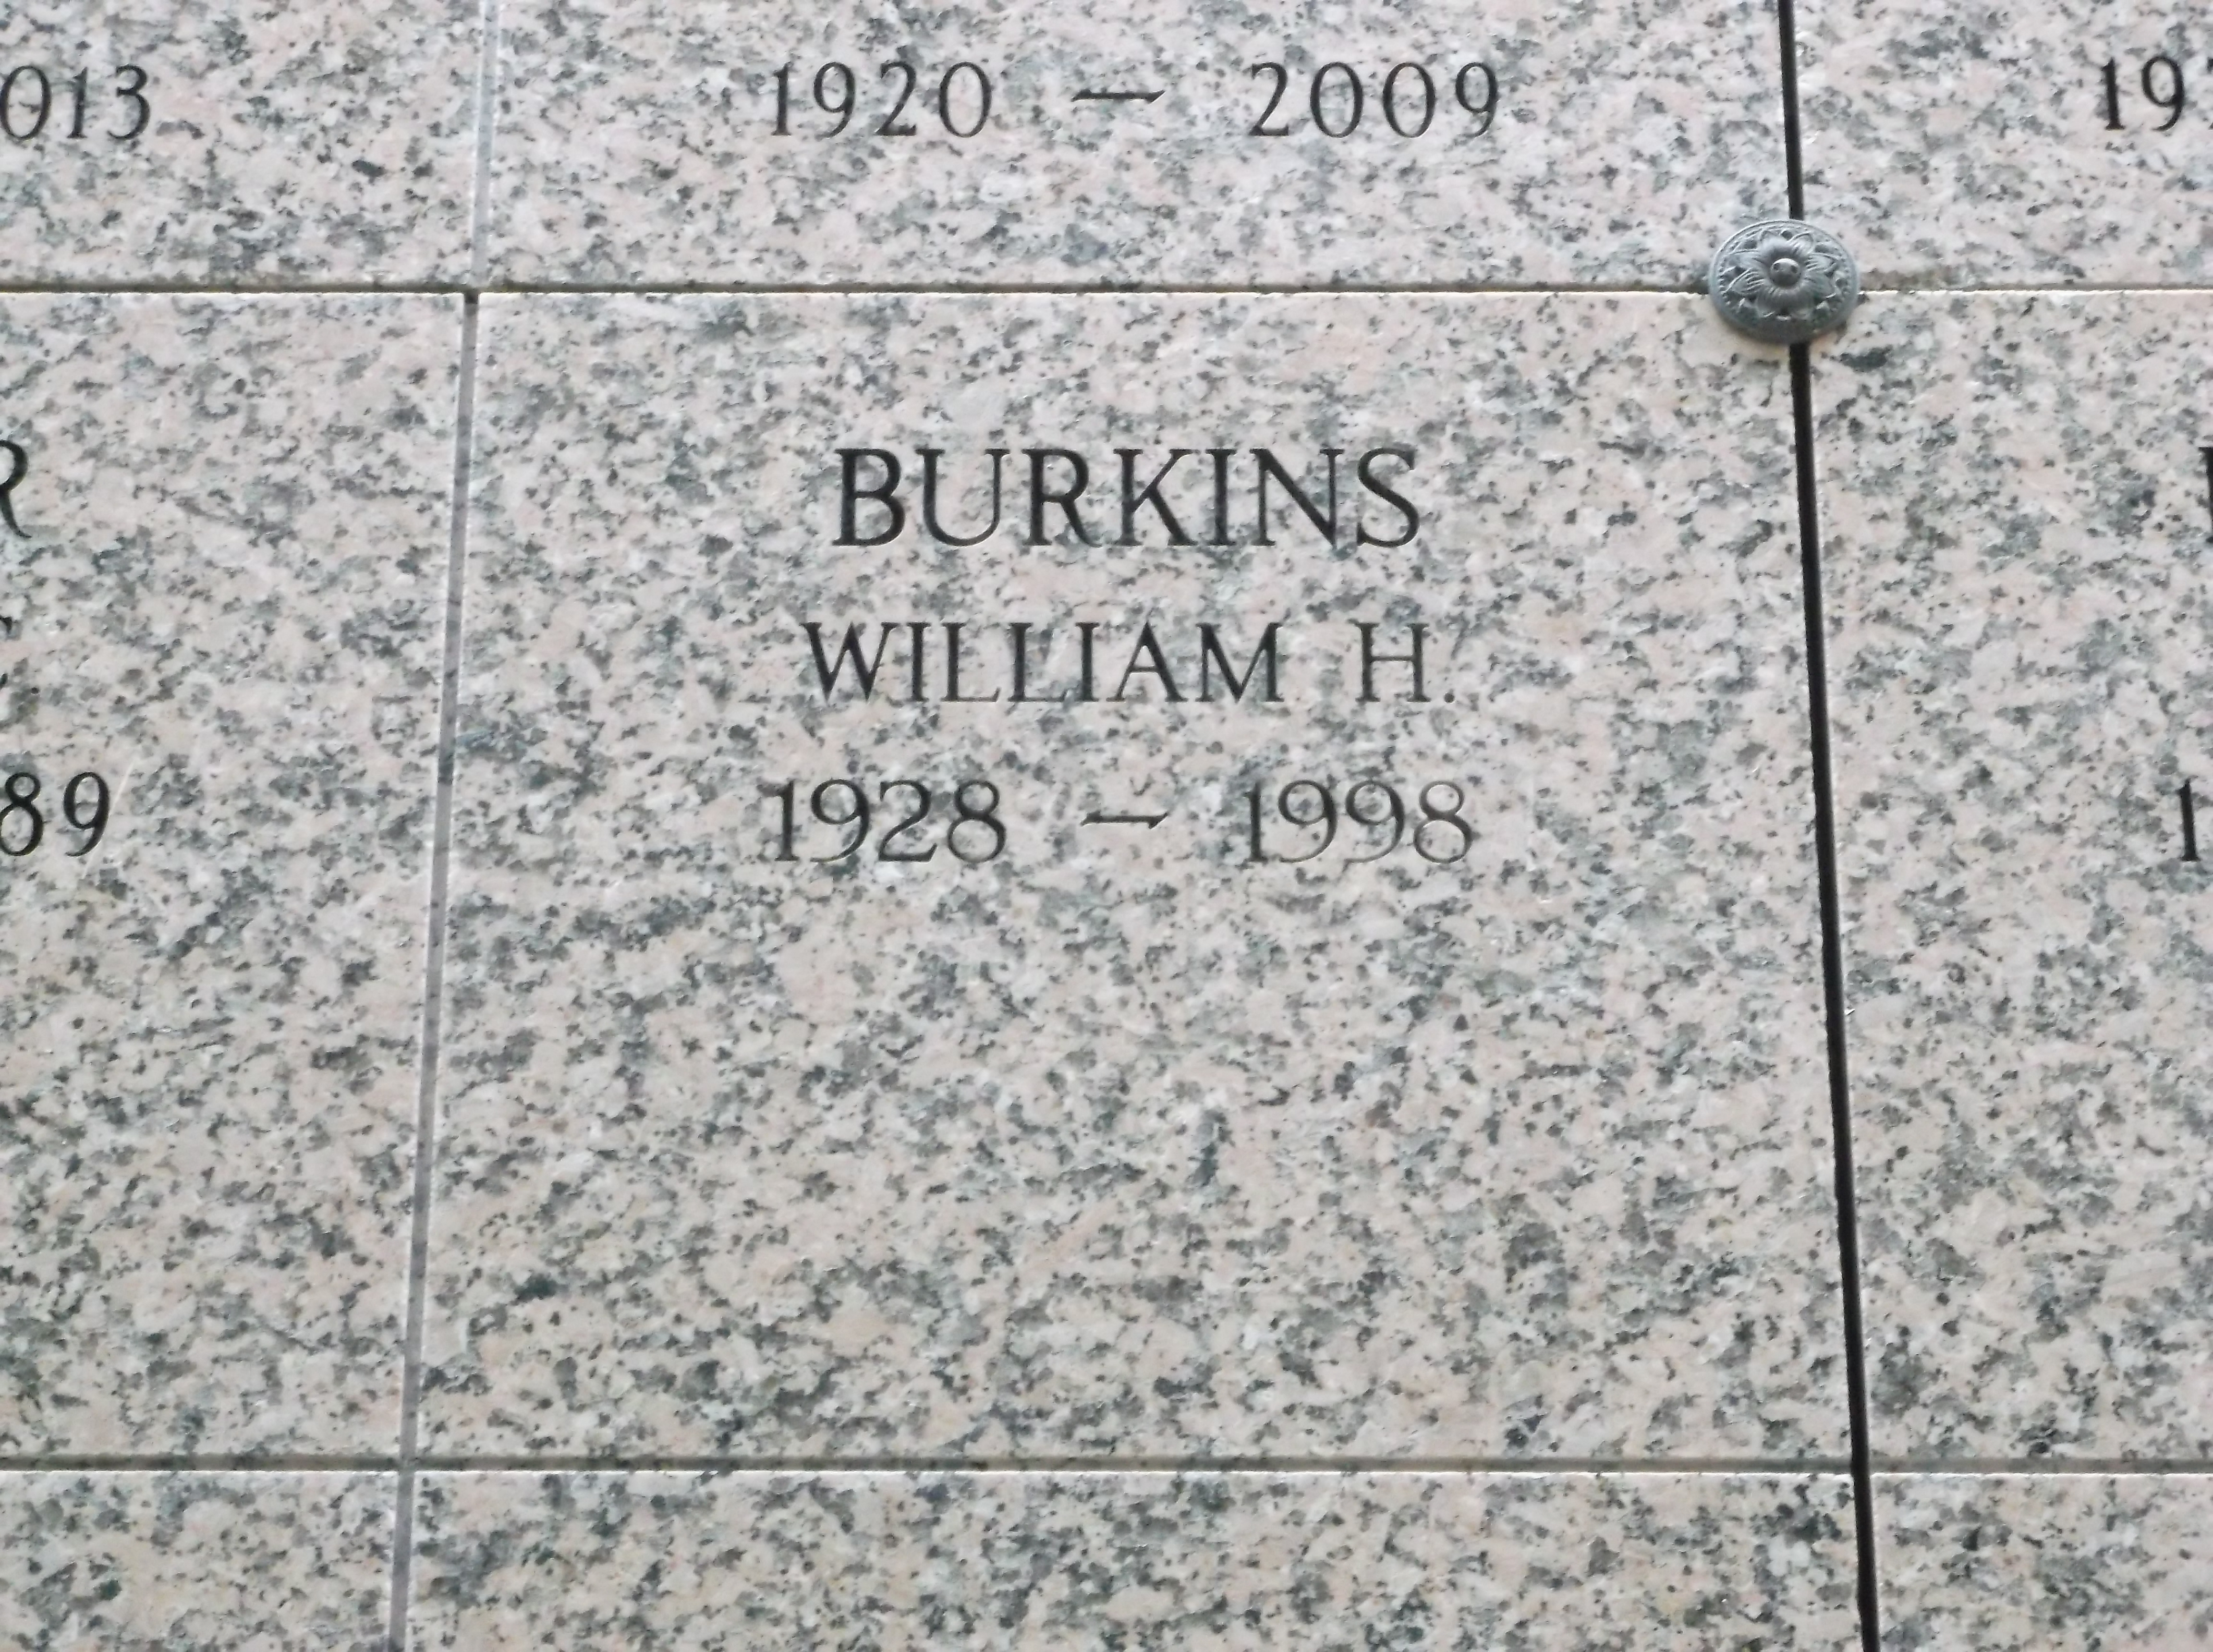 William H Burkins